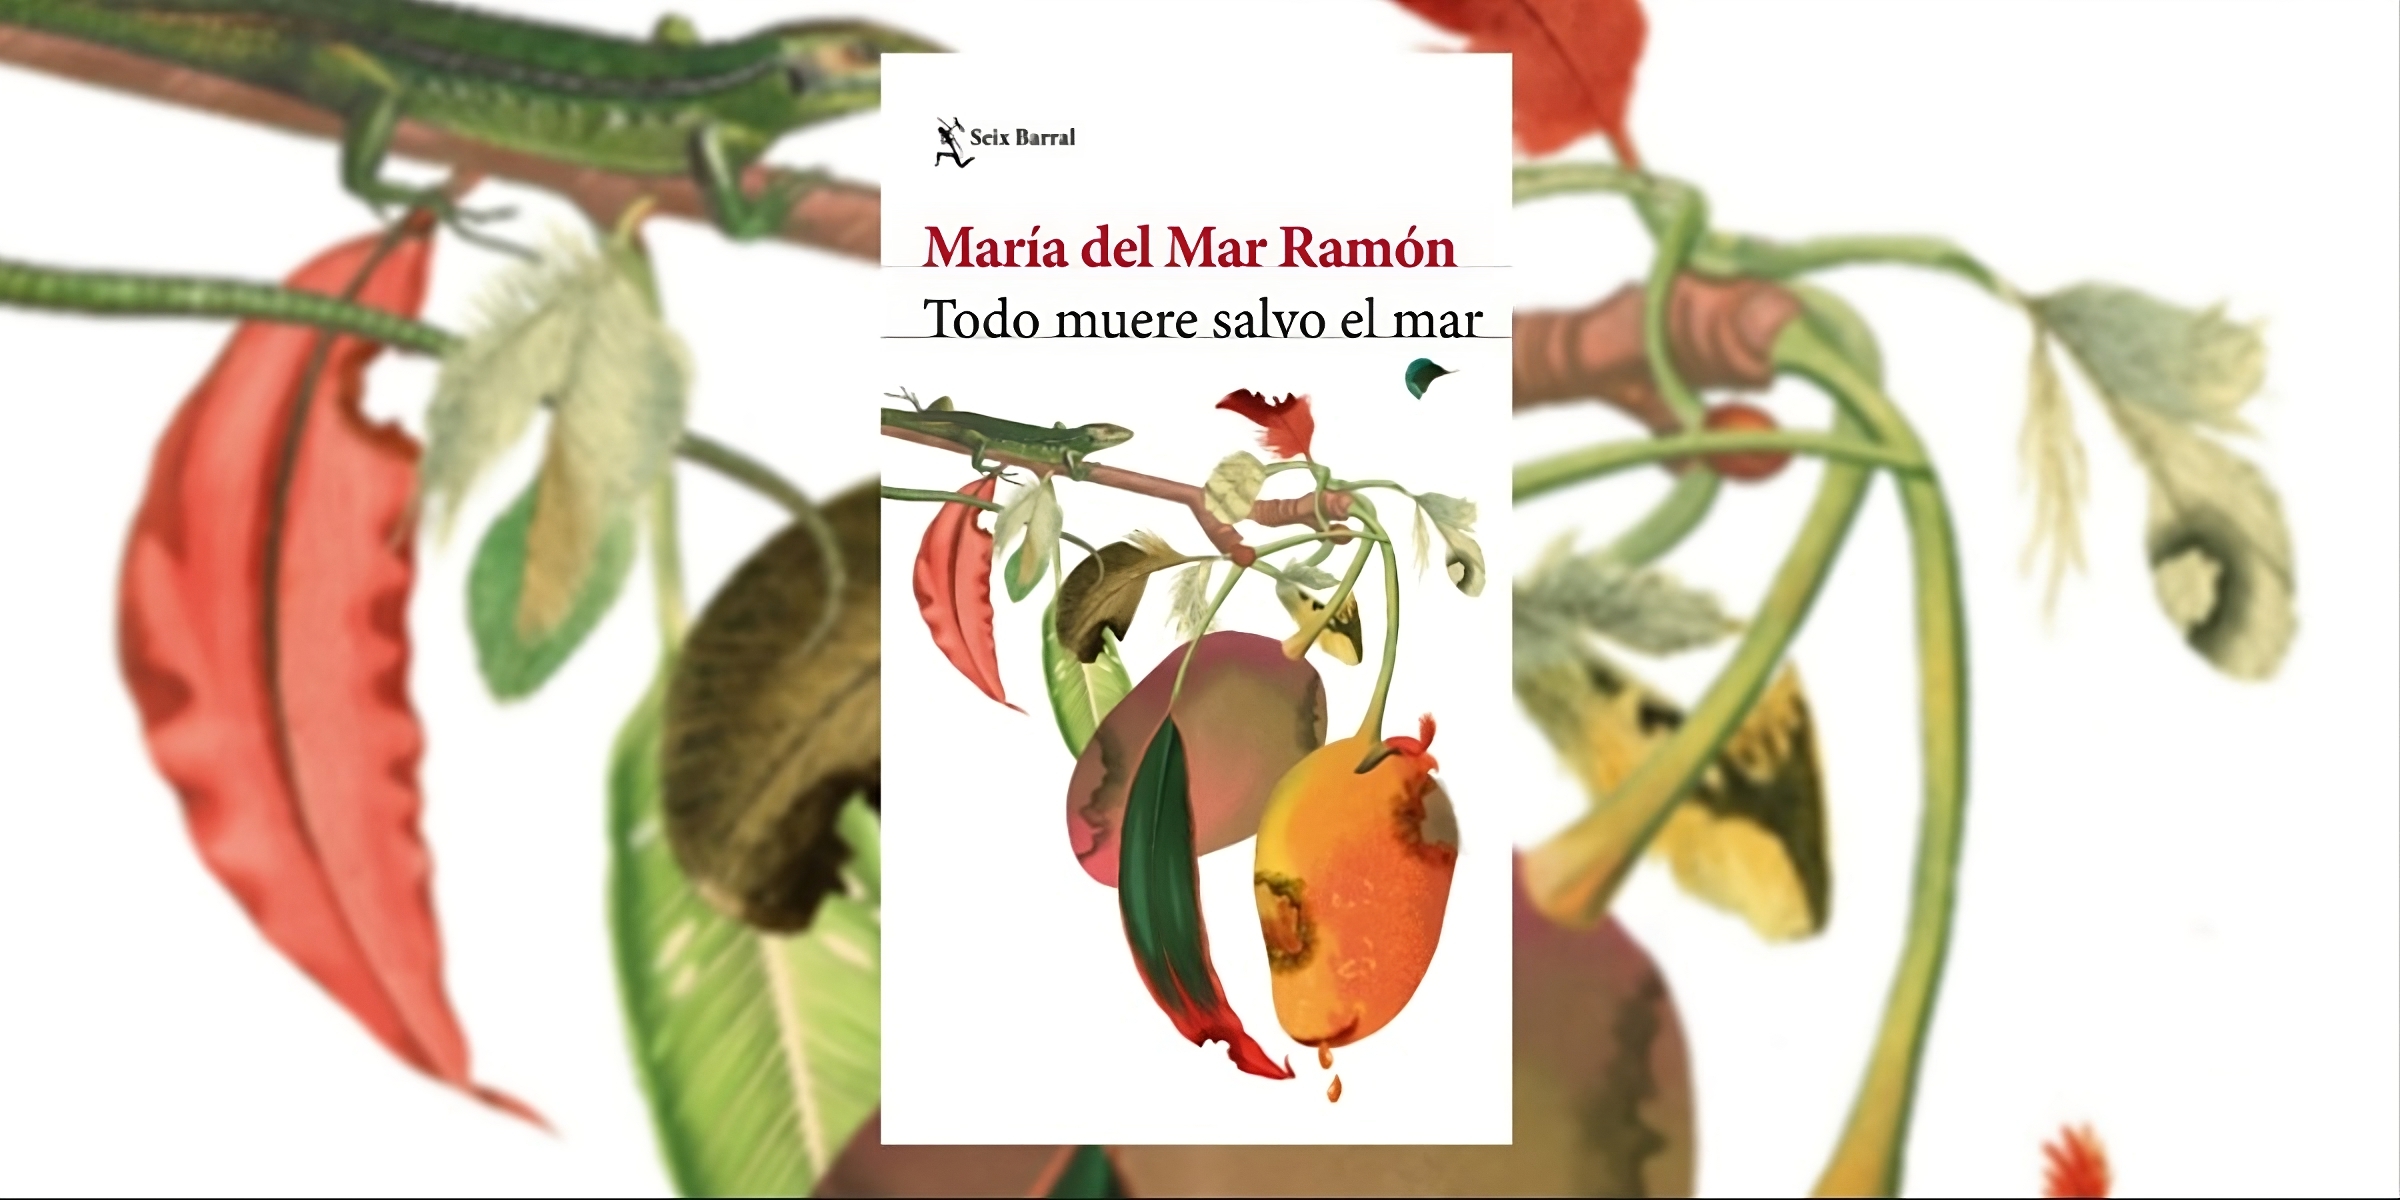 Portada del libro "Todo muere salvo el mar", de la escritora colombiana María del Mar Ramón. (Planeta de Libros).